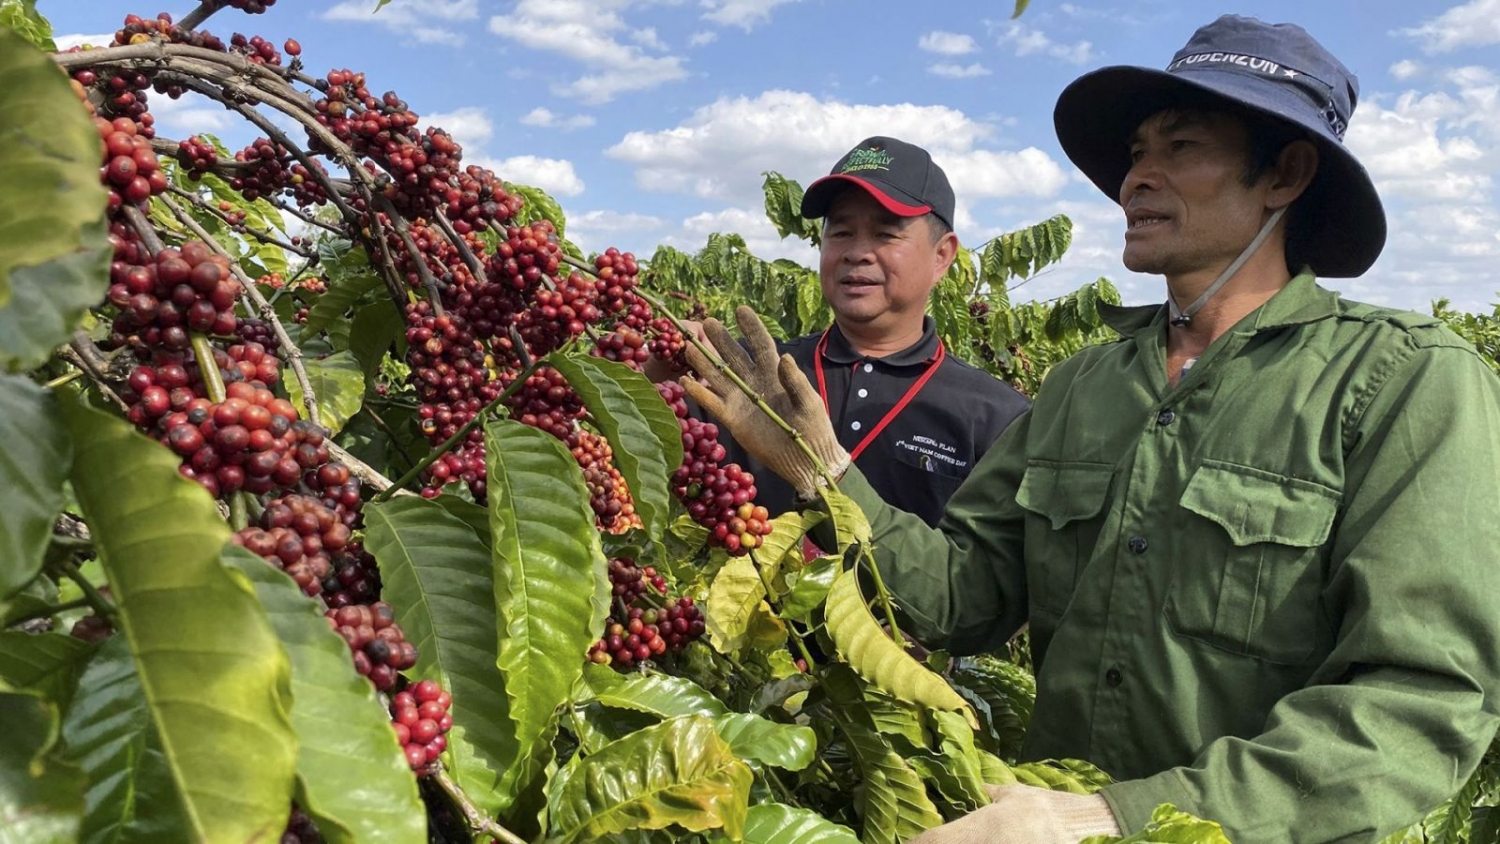 Triển vọng cho ngành cà phê từ Hiệp định UKVFTA